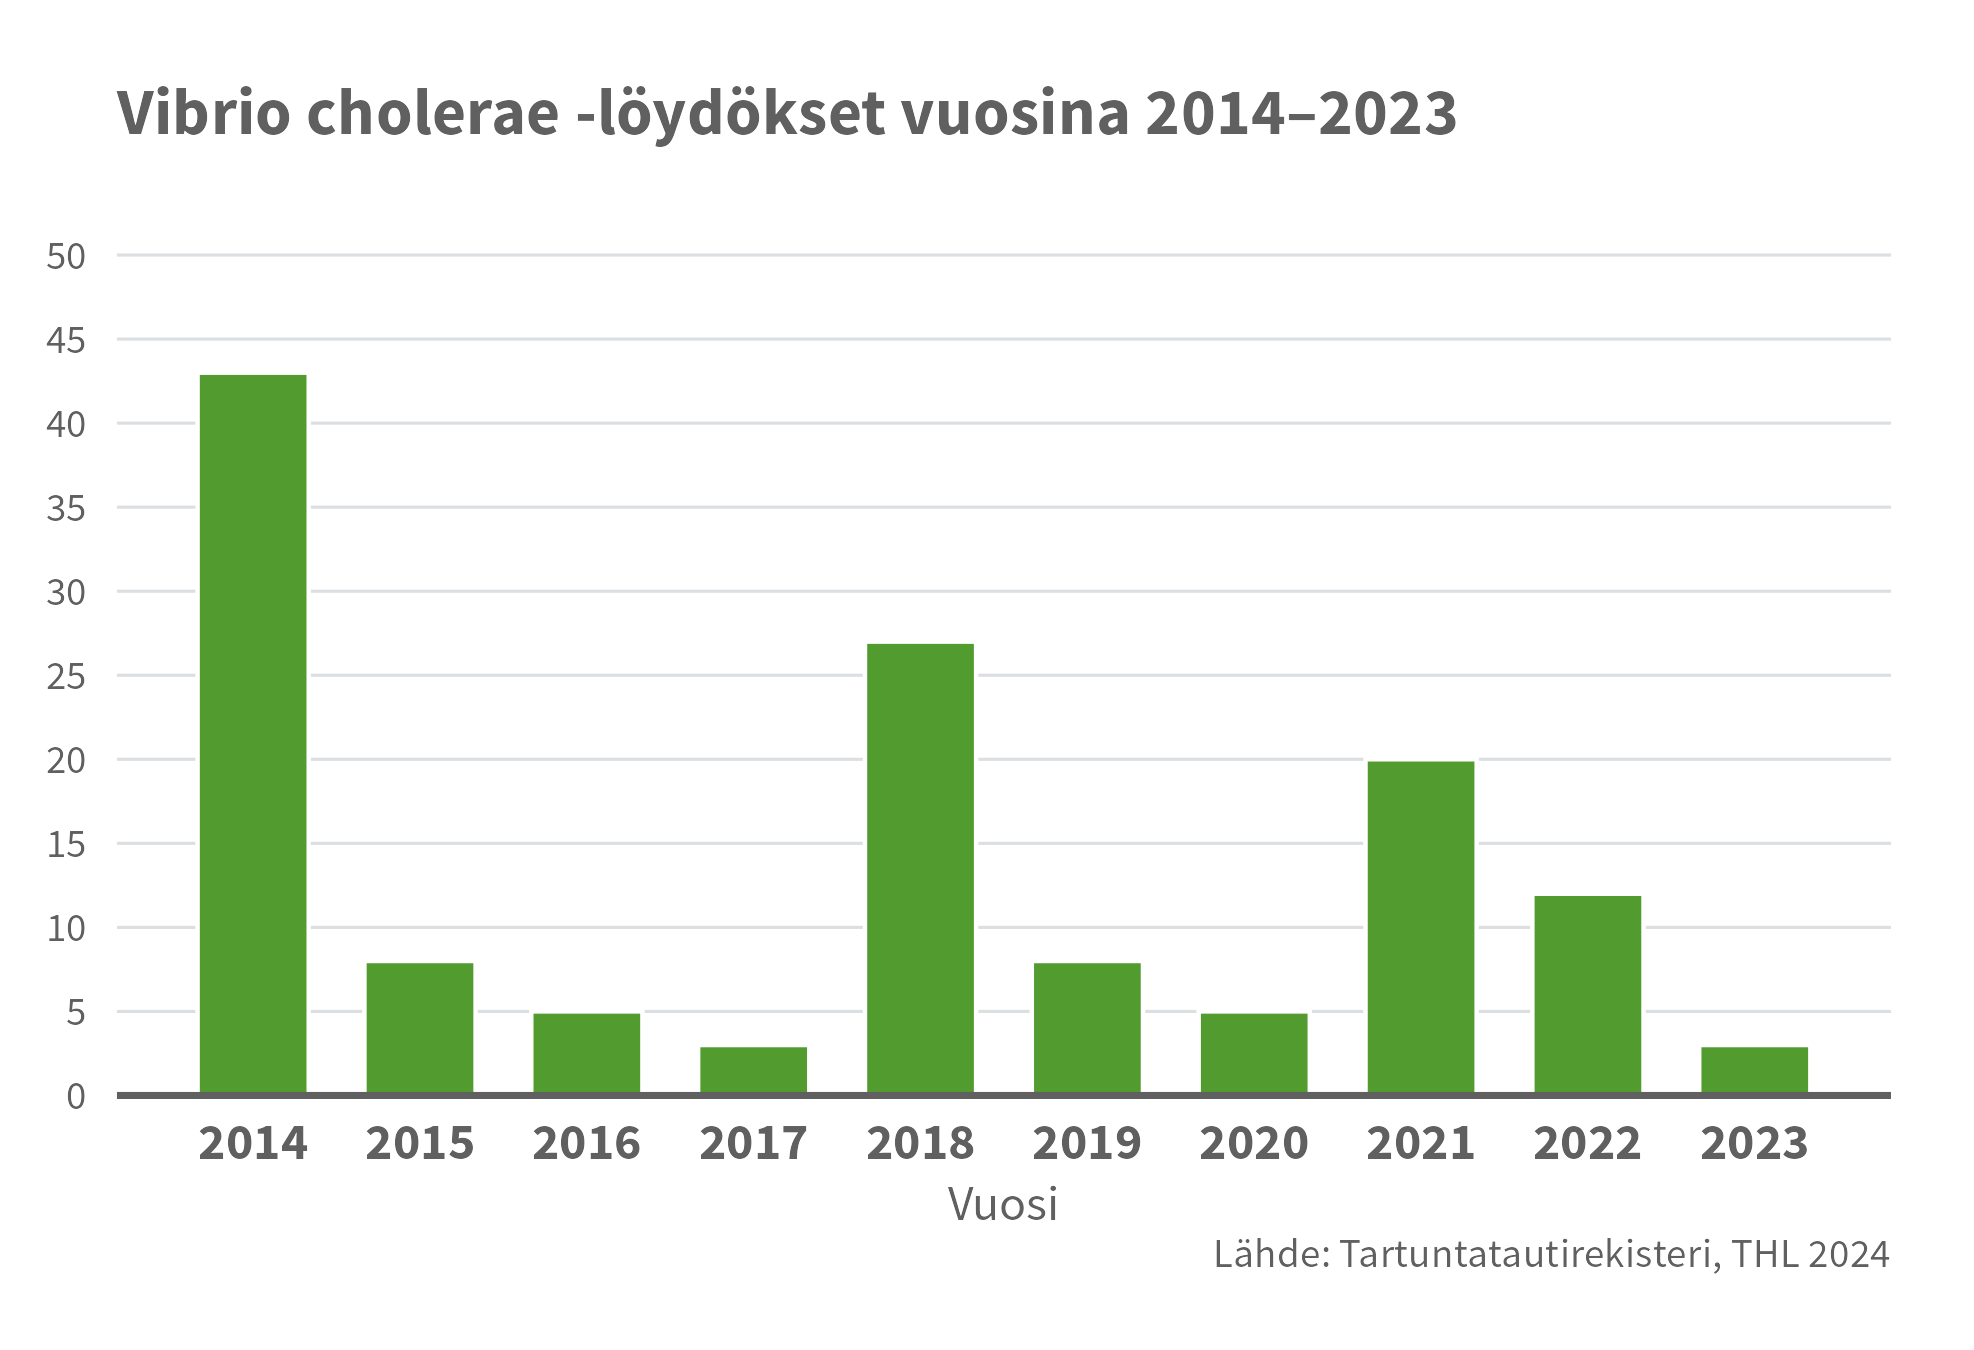 Vibrio choleraen tapausmäärät vaihtelevat vuosittain. Eniten tapauksia viimeisen kymmenen vuoden aikana ilmoitettiin vuonna 2014, jolloin oli 43 tapausta, kun taas vuosina 2017 ja 2023 tapauksia oli molempina vuosina vain kolme.